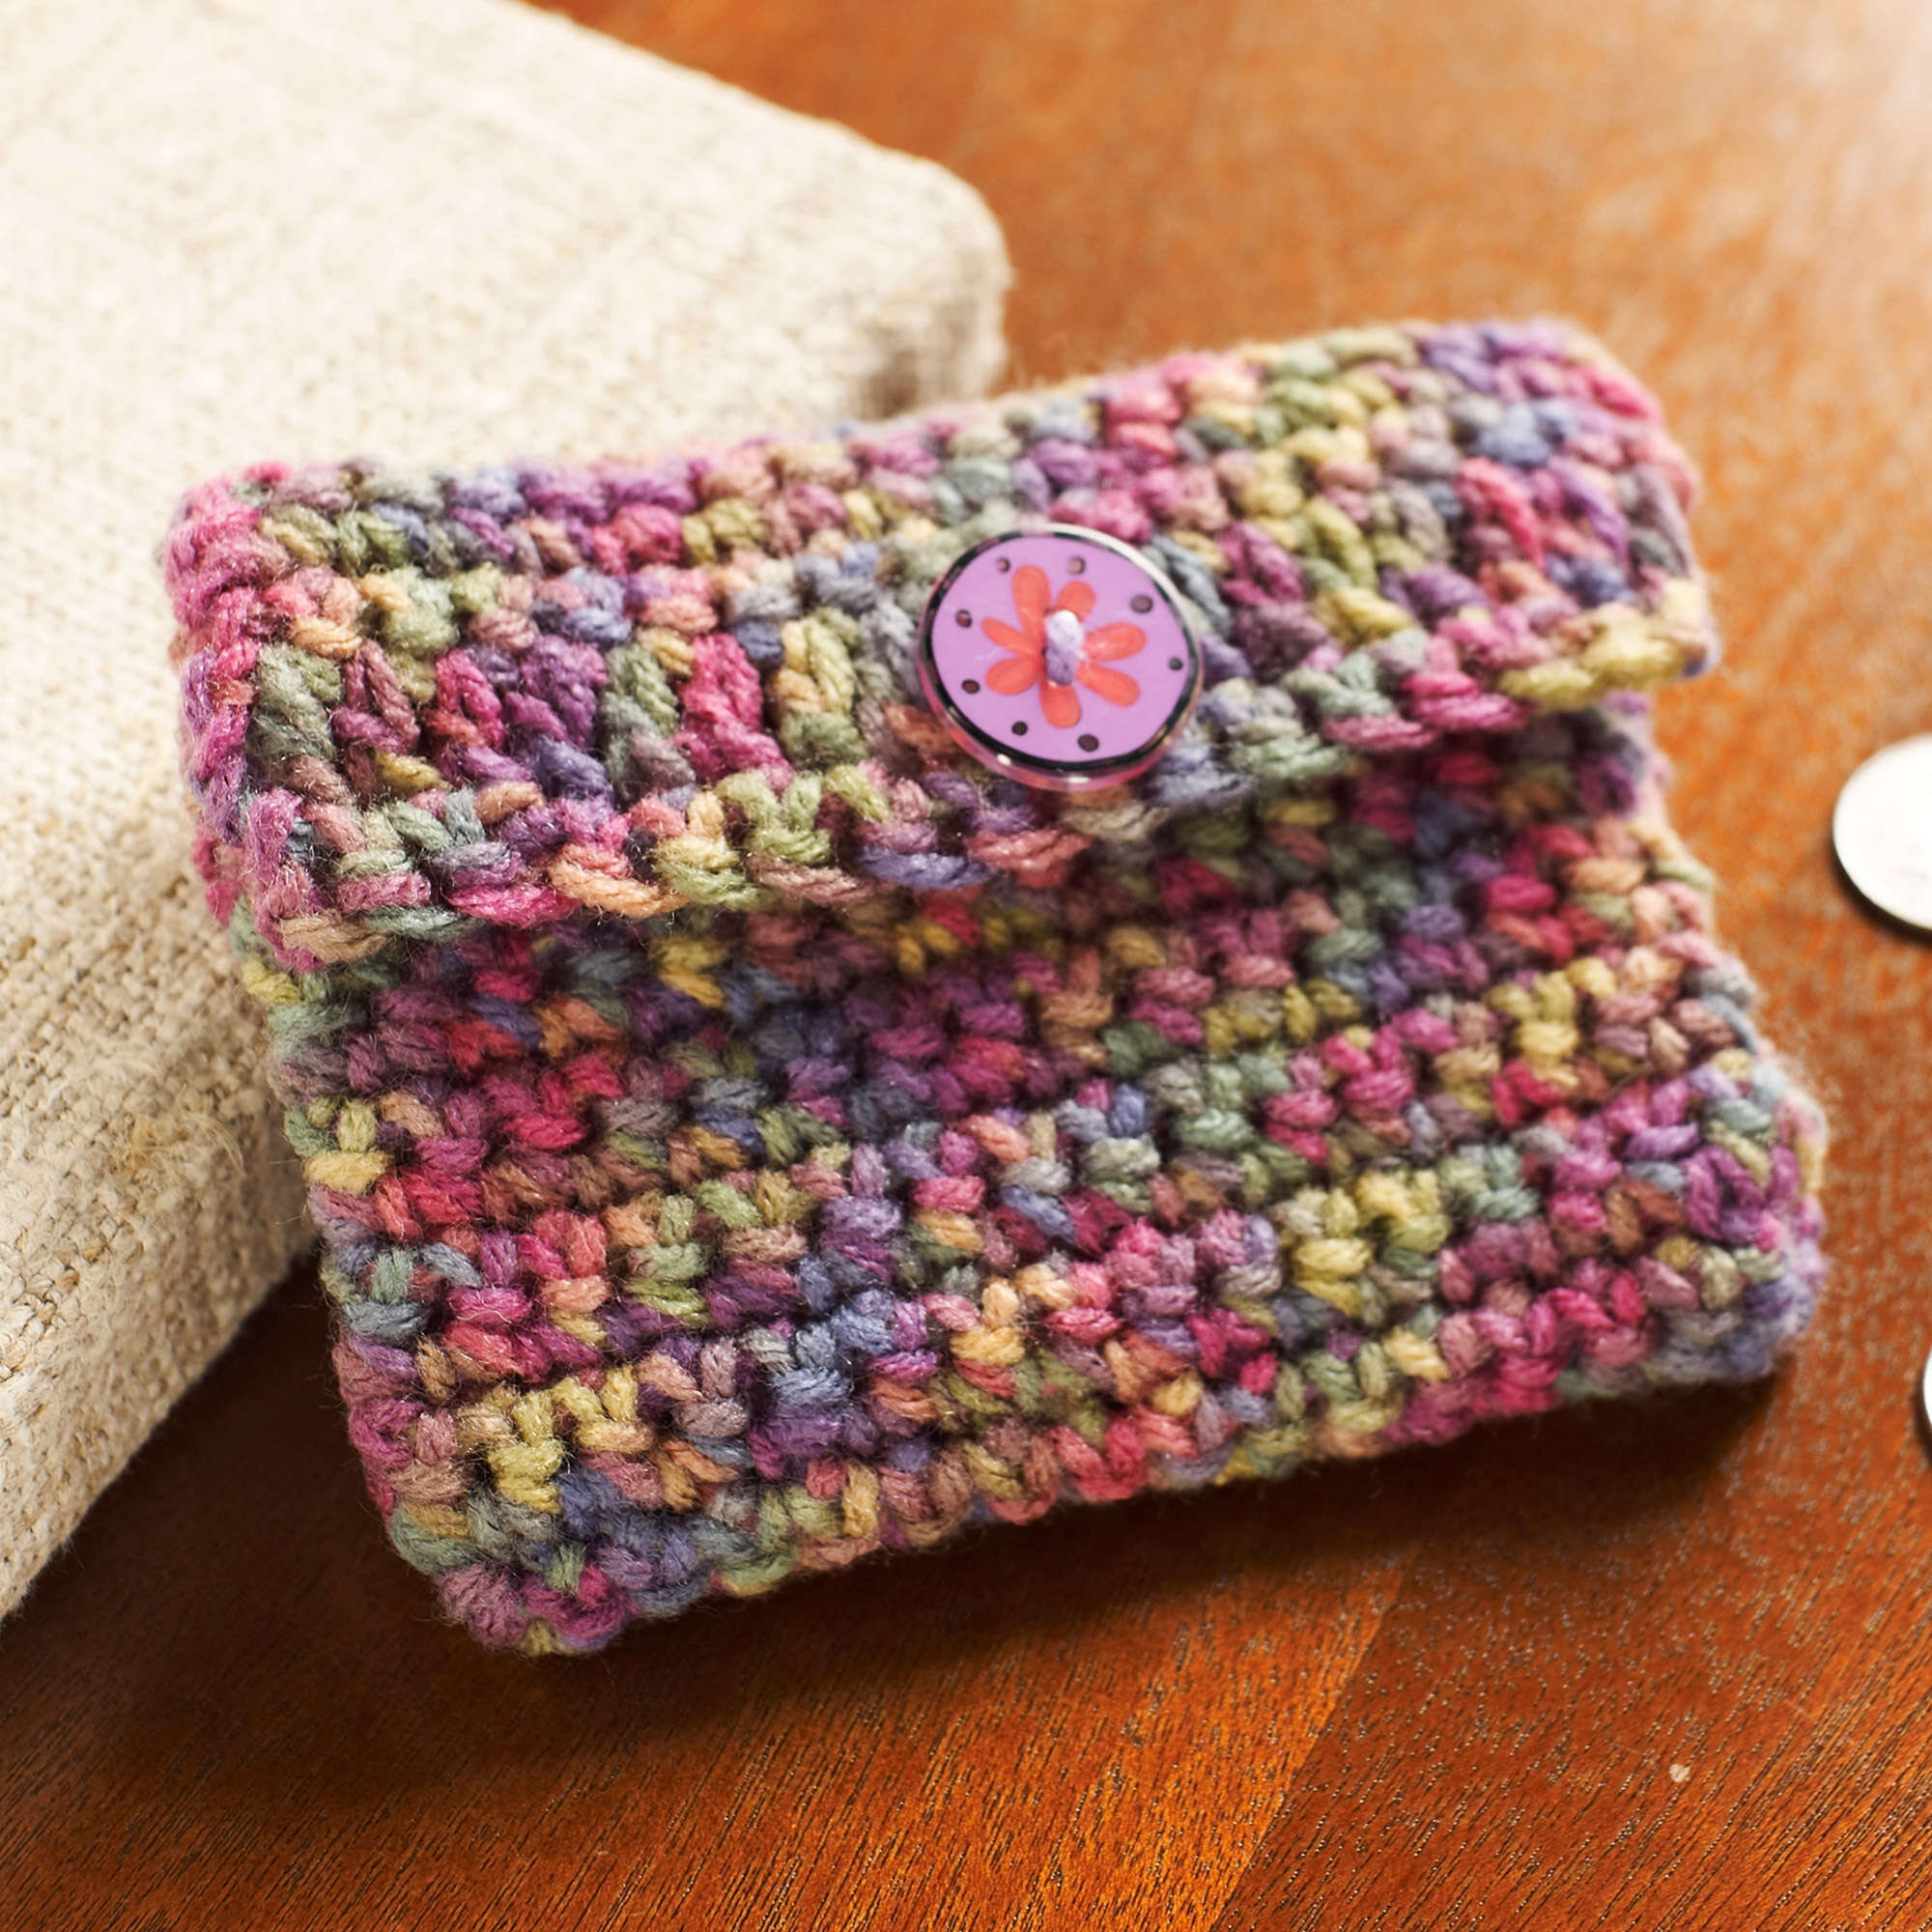 Easy + Modern Free Crochet Bag Pattern for Beginners